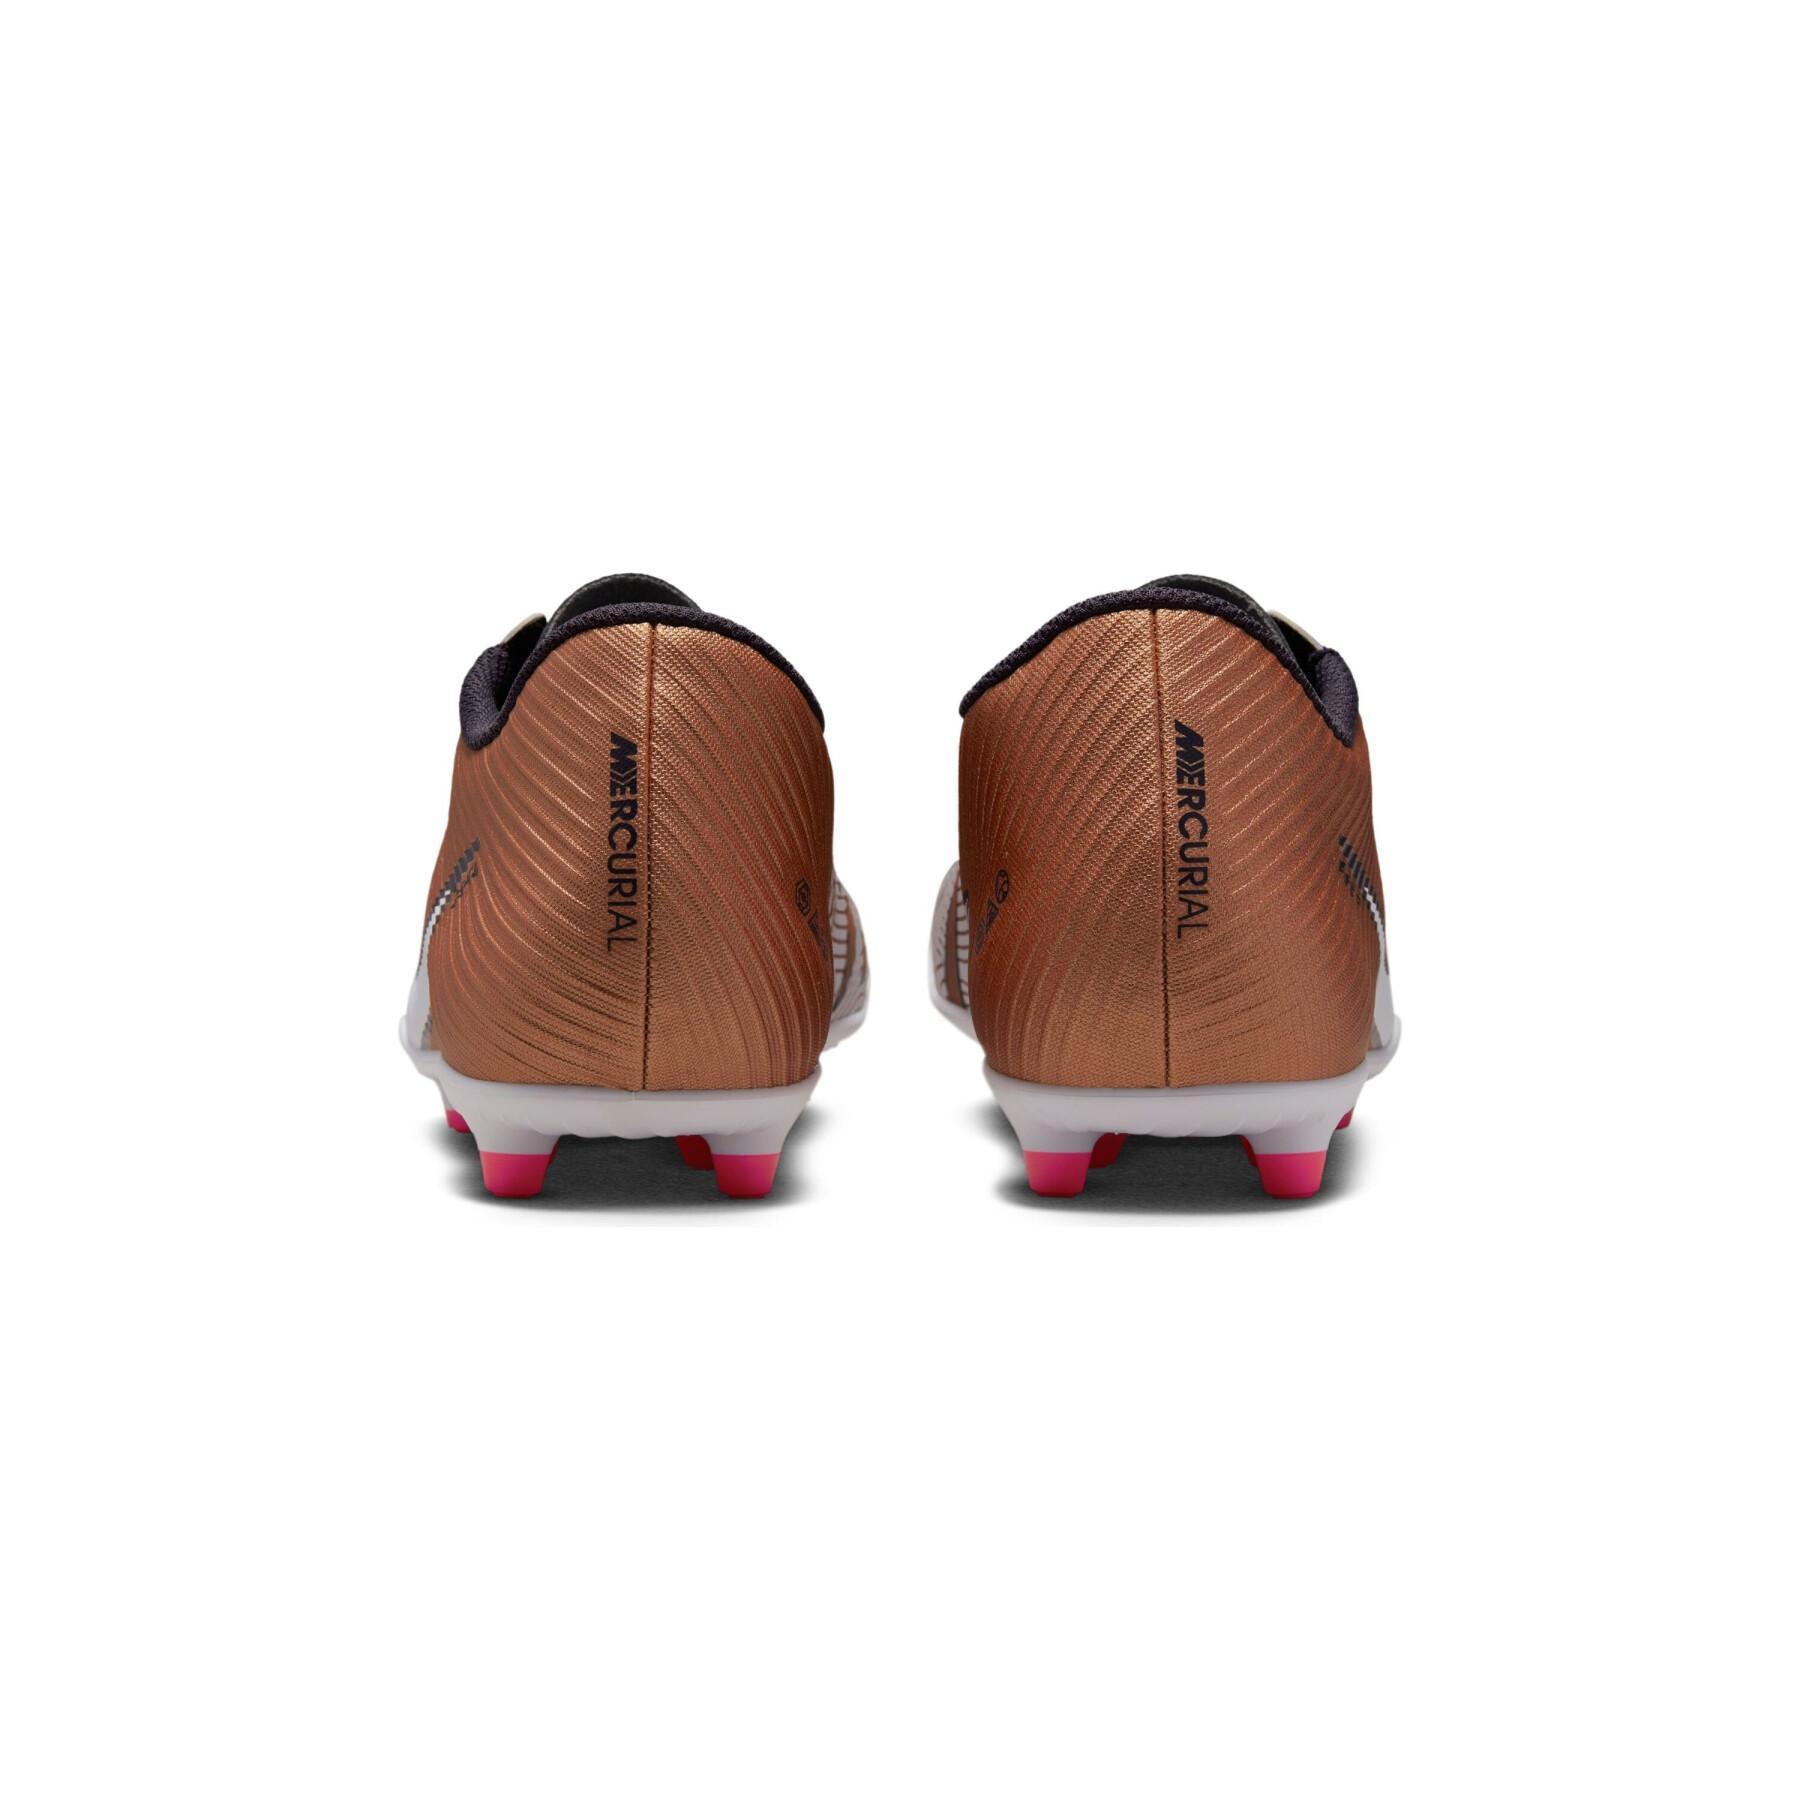 Sapatos de futebol Nike Mercurial Vapor 15 Club FG/MG - Generation Pack